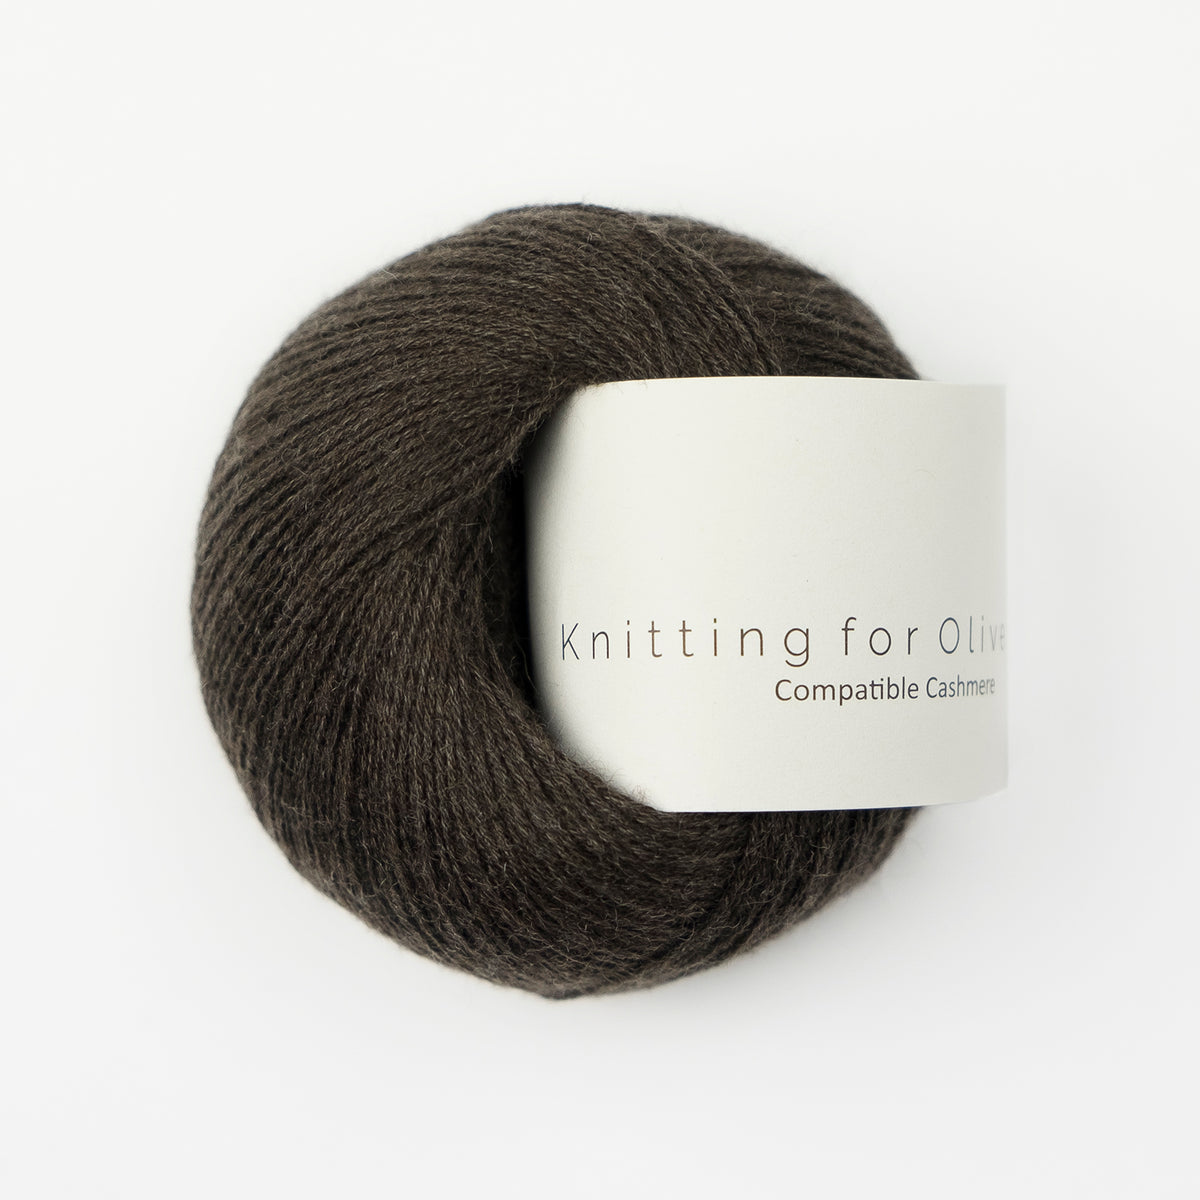 Kuvassa on Knitting for Olive Compatible Cashmere -lanka (yarn) värissä Brown Bear.